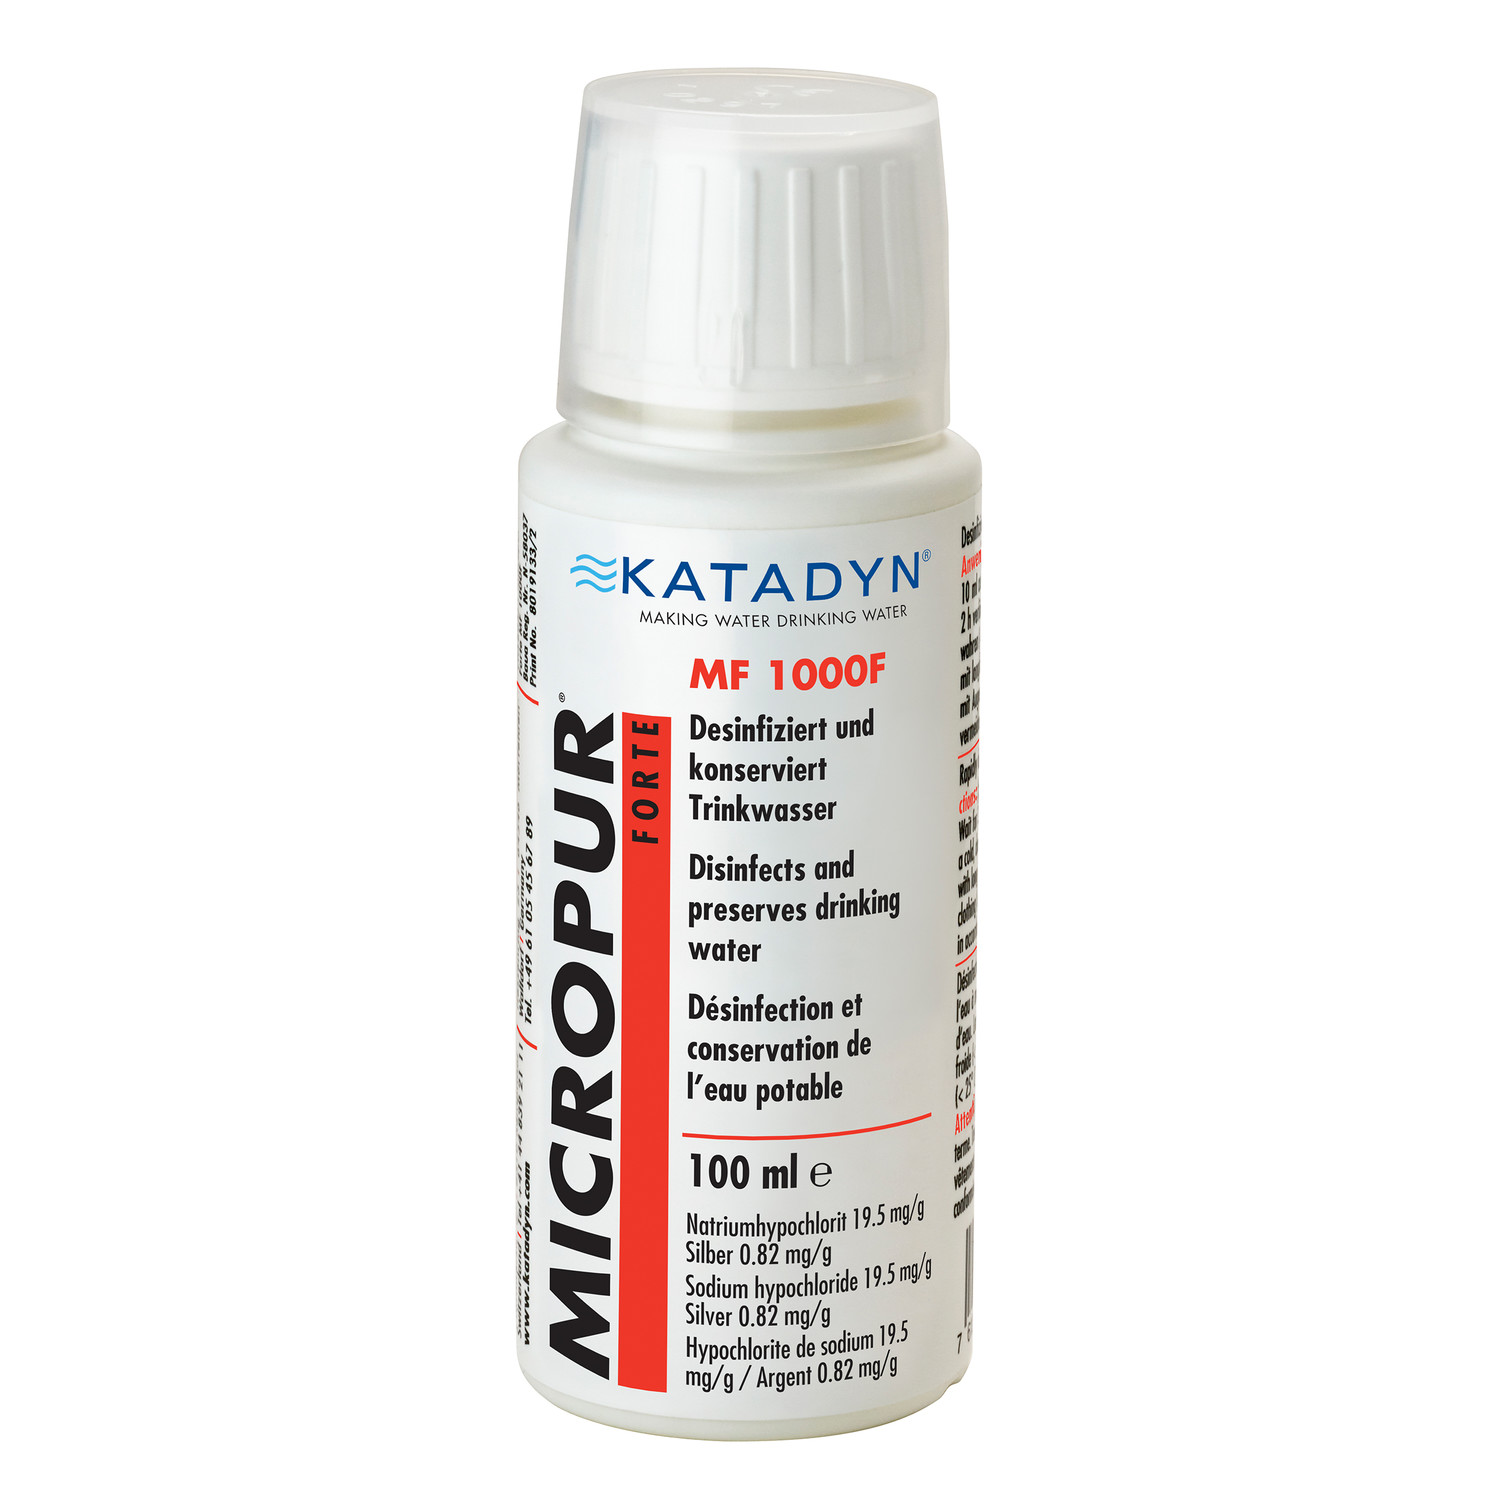 Katadyn Micropur Forte Wasserdesinfektion MF 1.000F Flüssigkeit